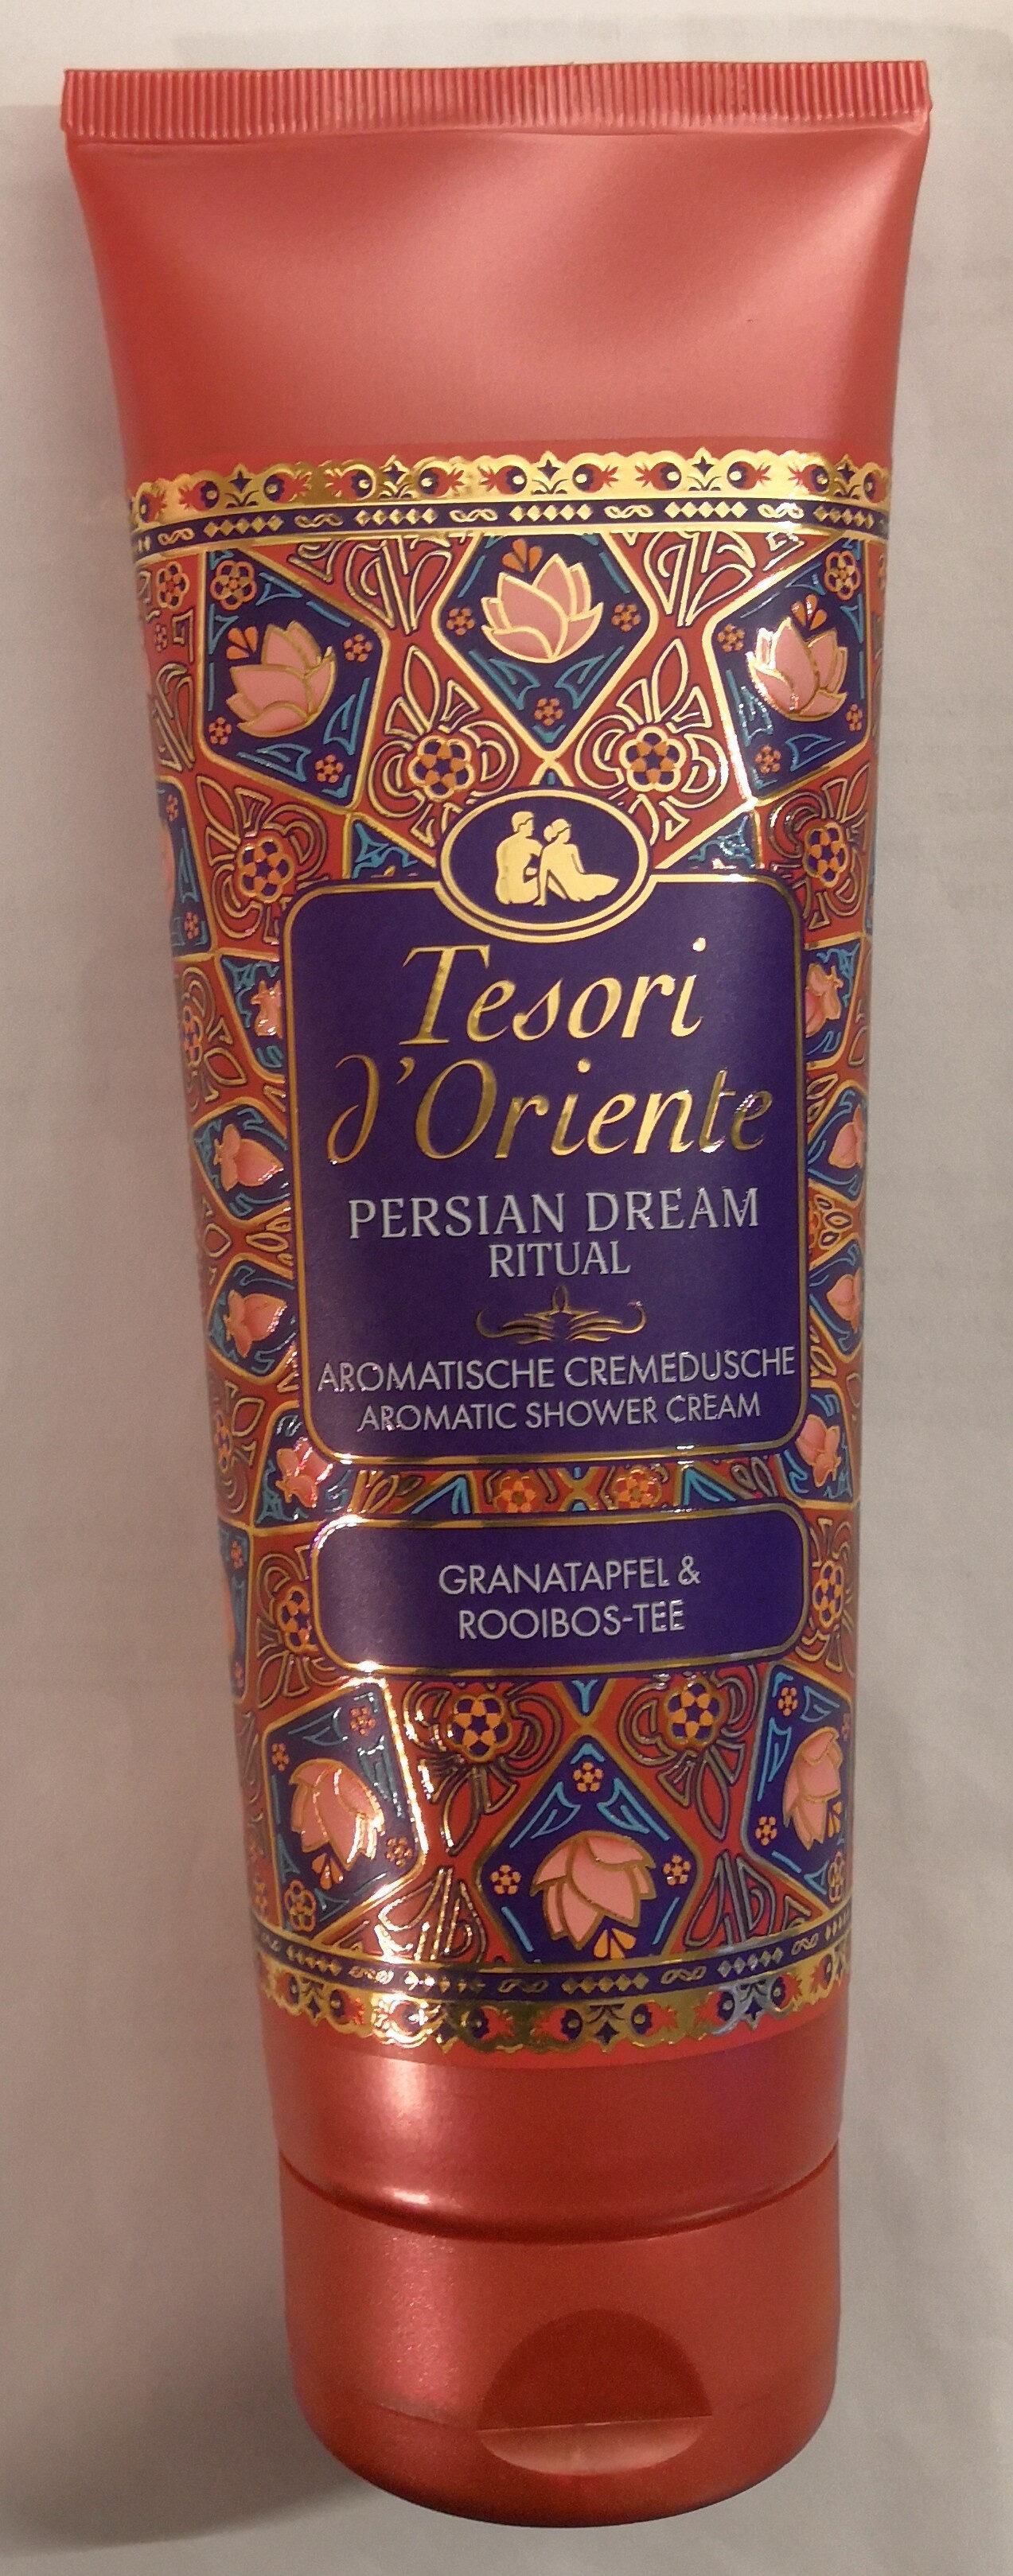 Persian Dream Ritual Granatapfel & Rooibos-Tee - 製品 - de